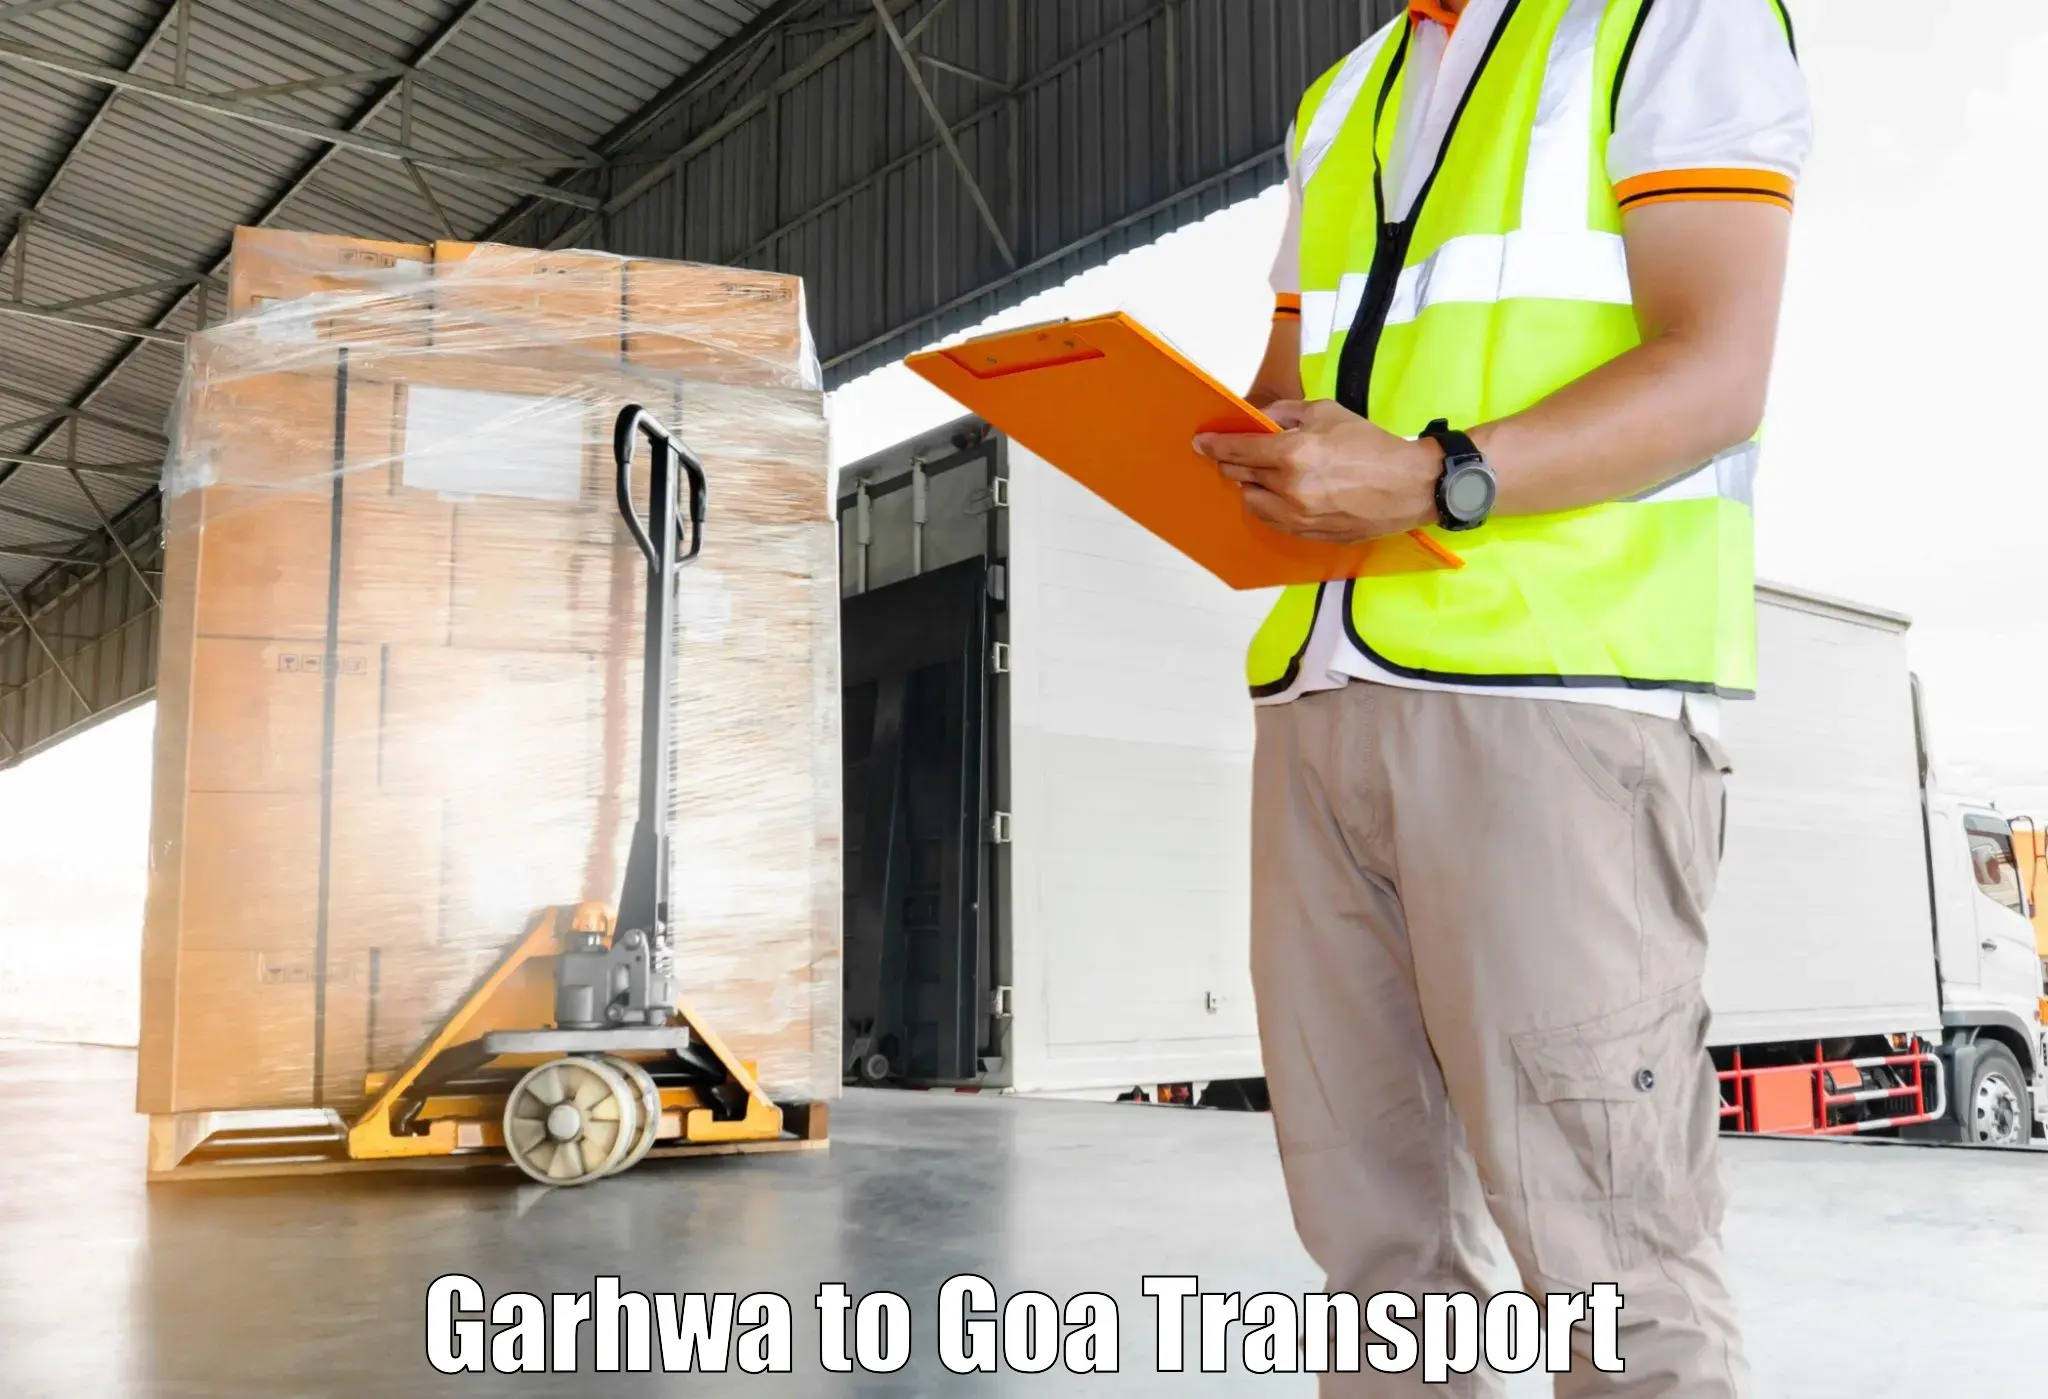 Bike shifting service Garhwa to South Goa